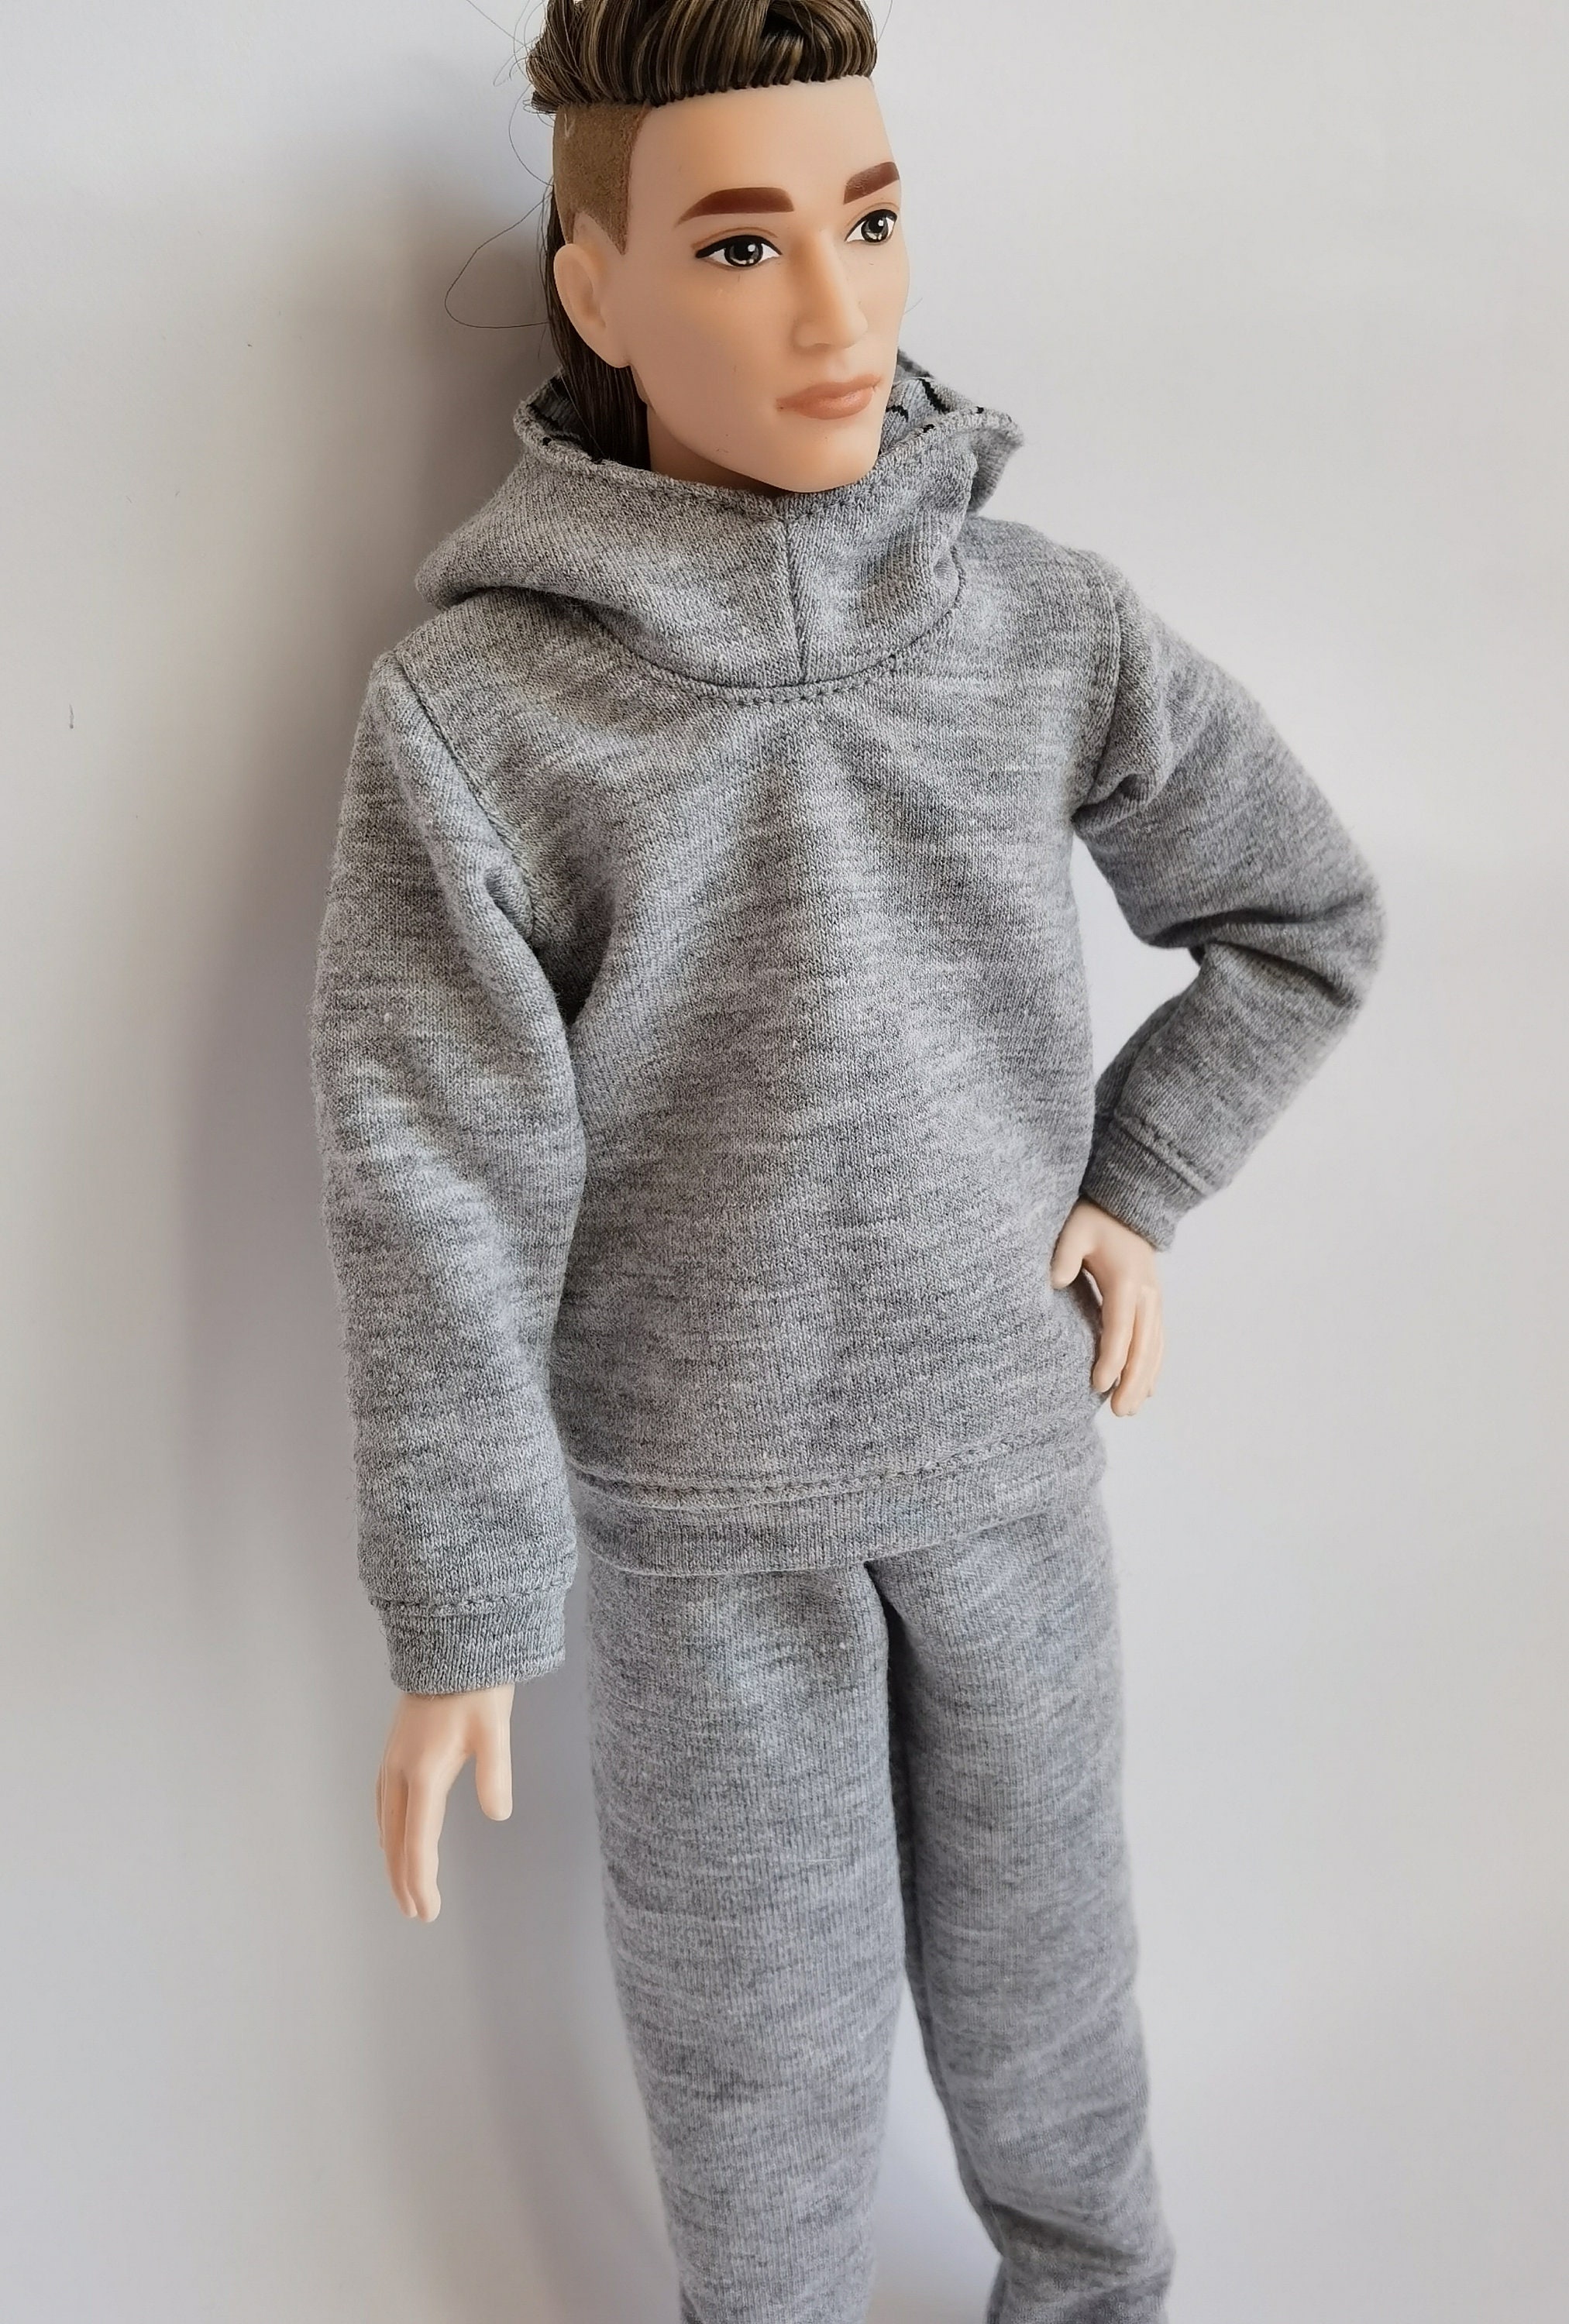 Ken Clothes/hoodie for Ken/doll Pants/sportswear Trousers/male